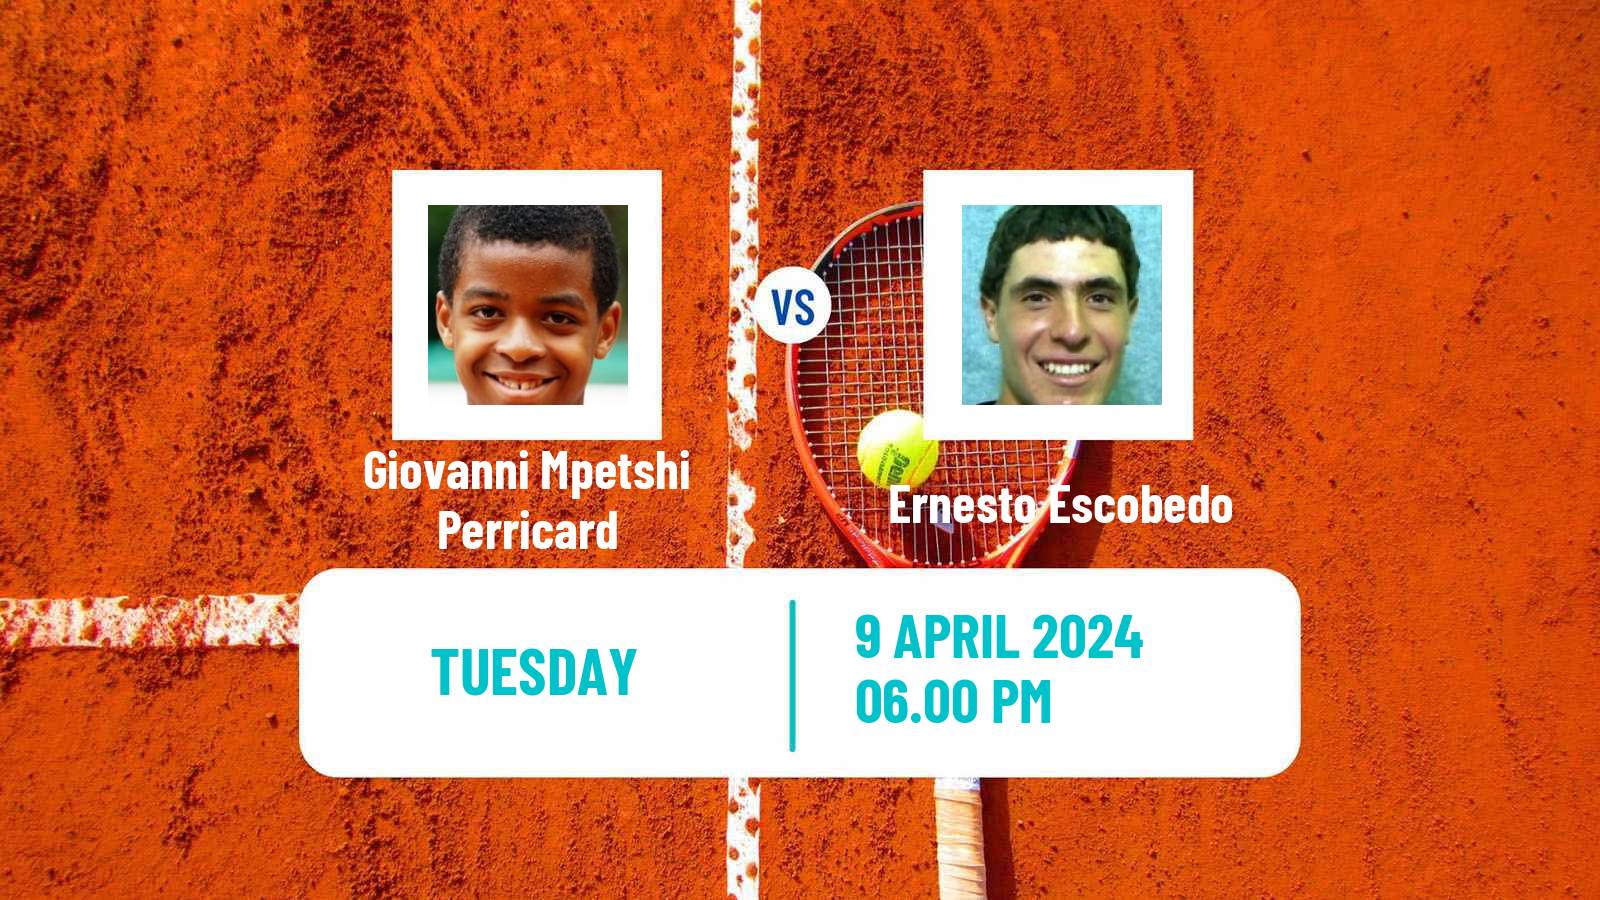 Tennis Morelos Challenger Men Giovanni Mpetshi Perricard - Ernesto Escobedo